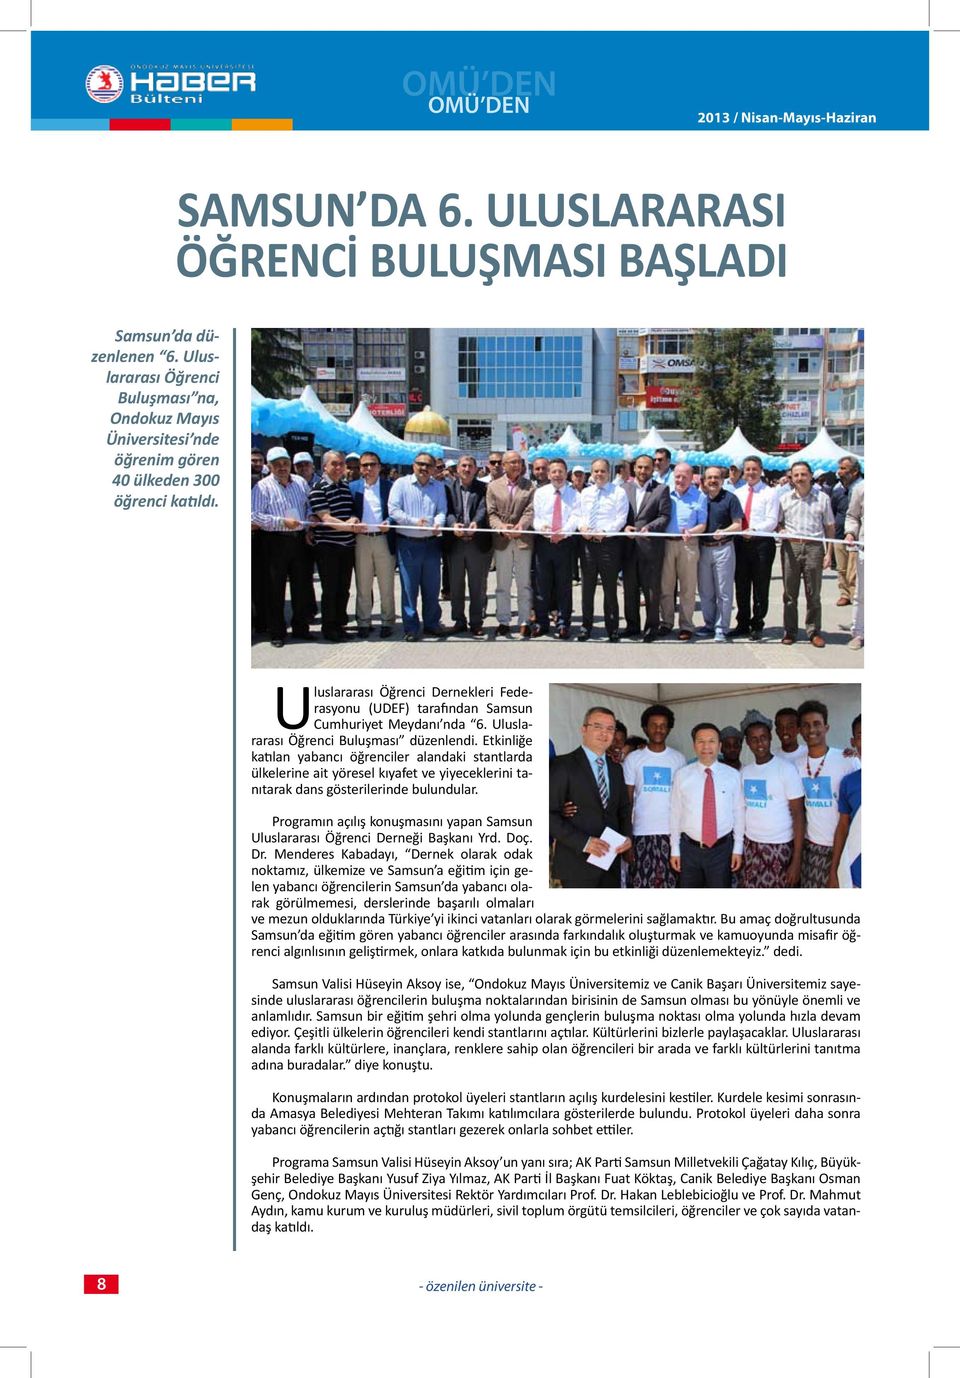 Uluslararası Öğrenci Dernekleri Federasyonu (UDEF) tarafından Samsun Cumhuriyet Meydanı nda 6. Uluslararası Öğrenci Buluşması düzenlendi.